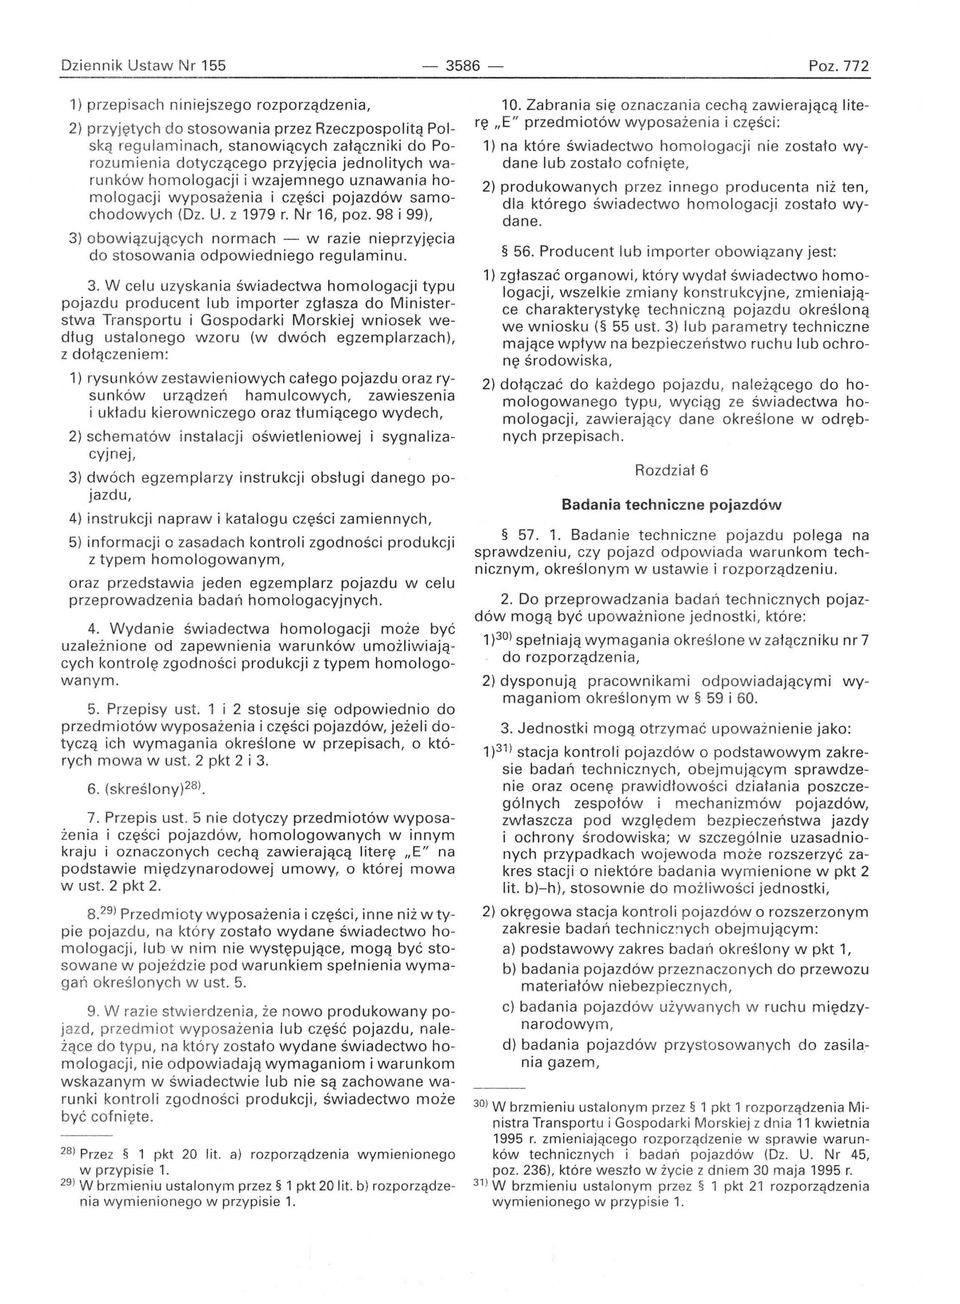 homologacji i wzajemnego uznawania homologacji wyposażenia i części pojazdów samochodowych (Dz. U. z 1979 r. Nr 16, poz.